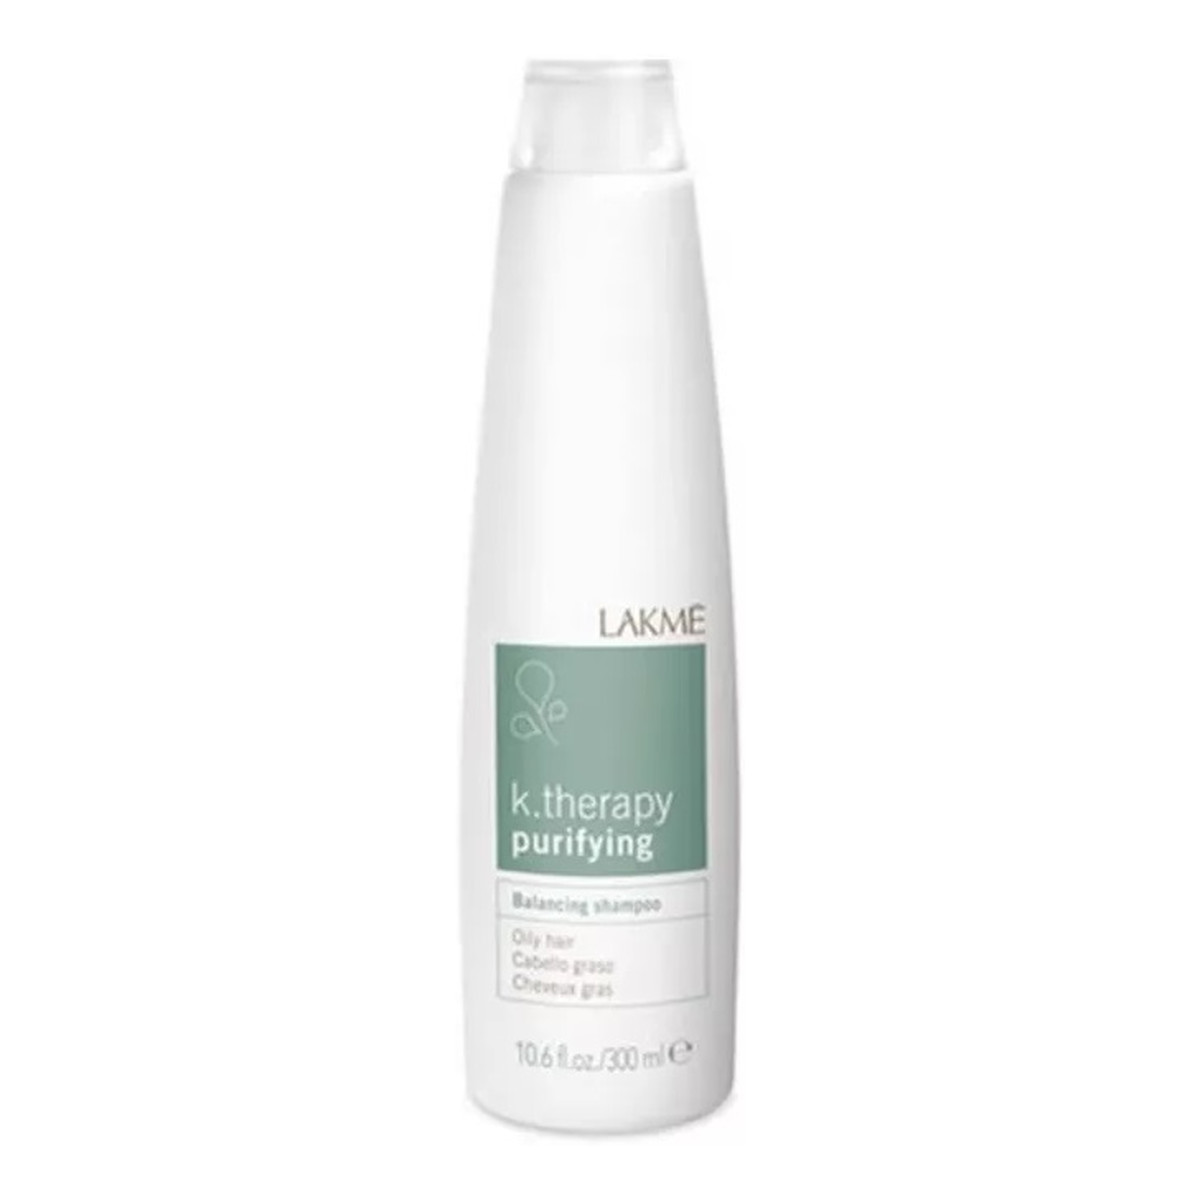 Lakme K. therapy purifying shampoo szampon do włosów przetłuszczających się regulujący wydzielanie sebum 300ml